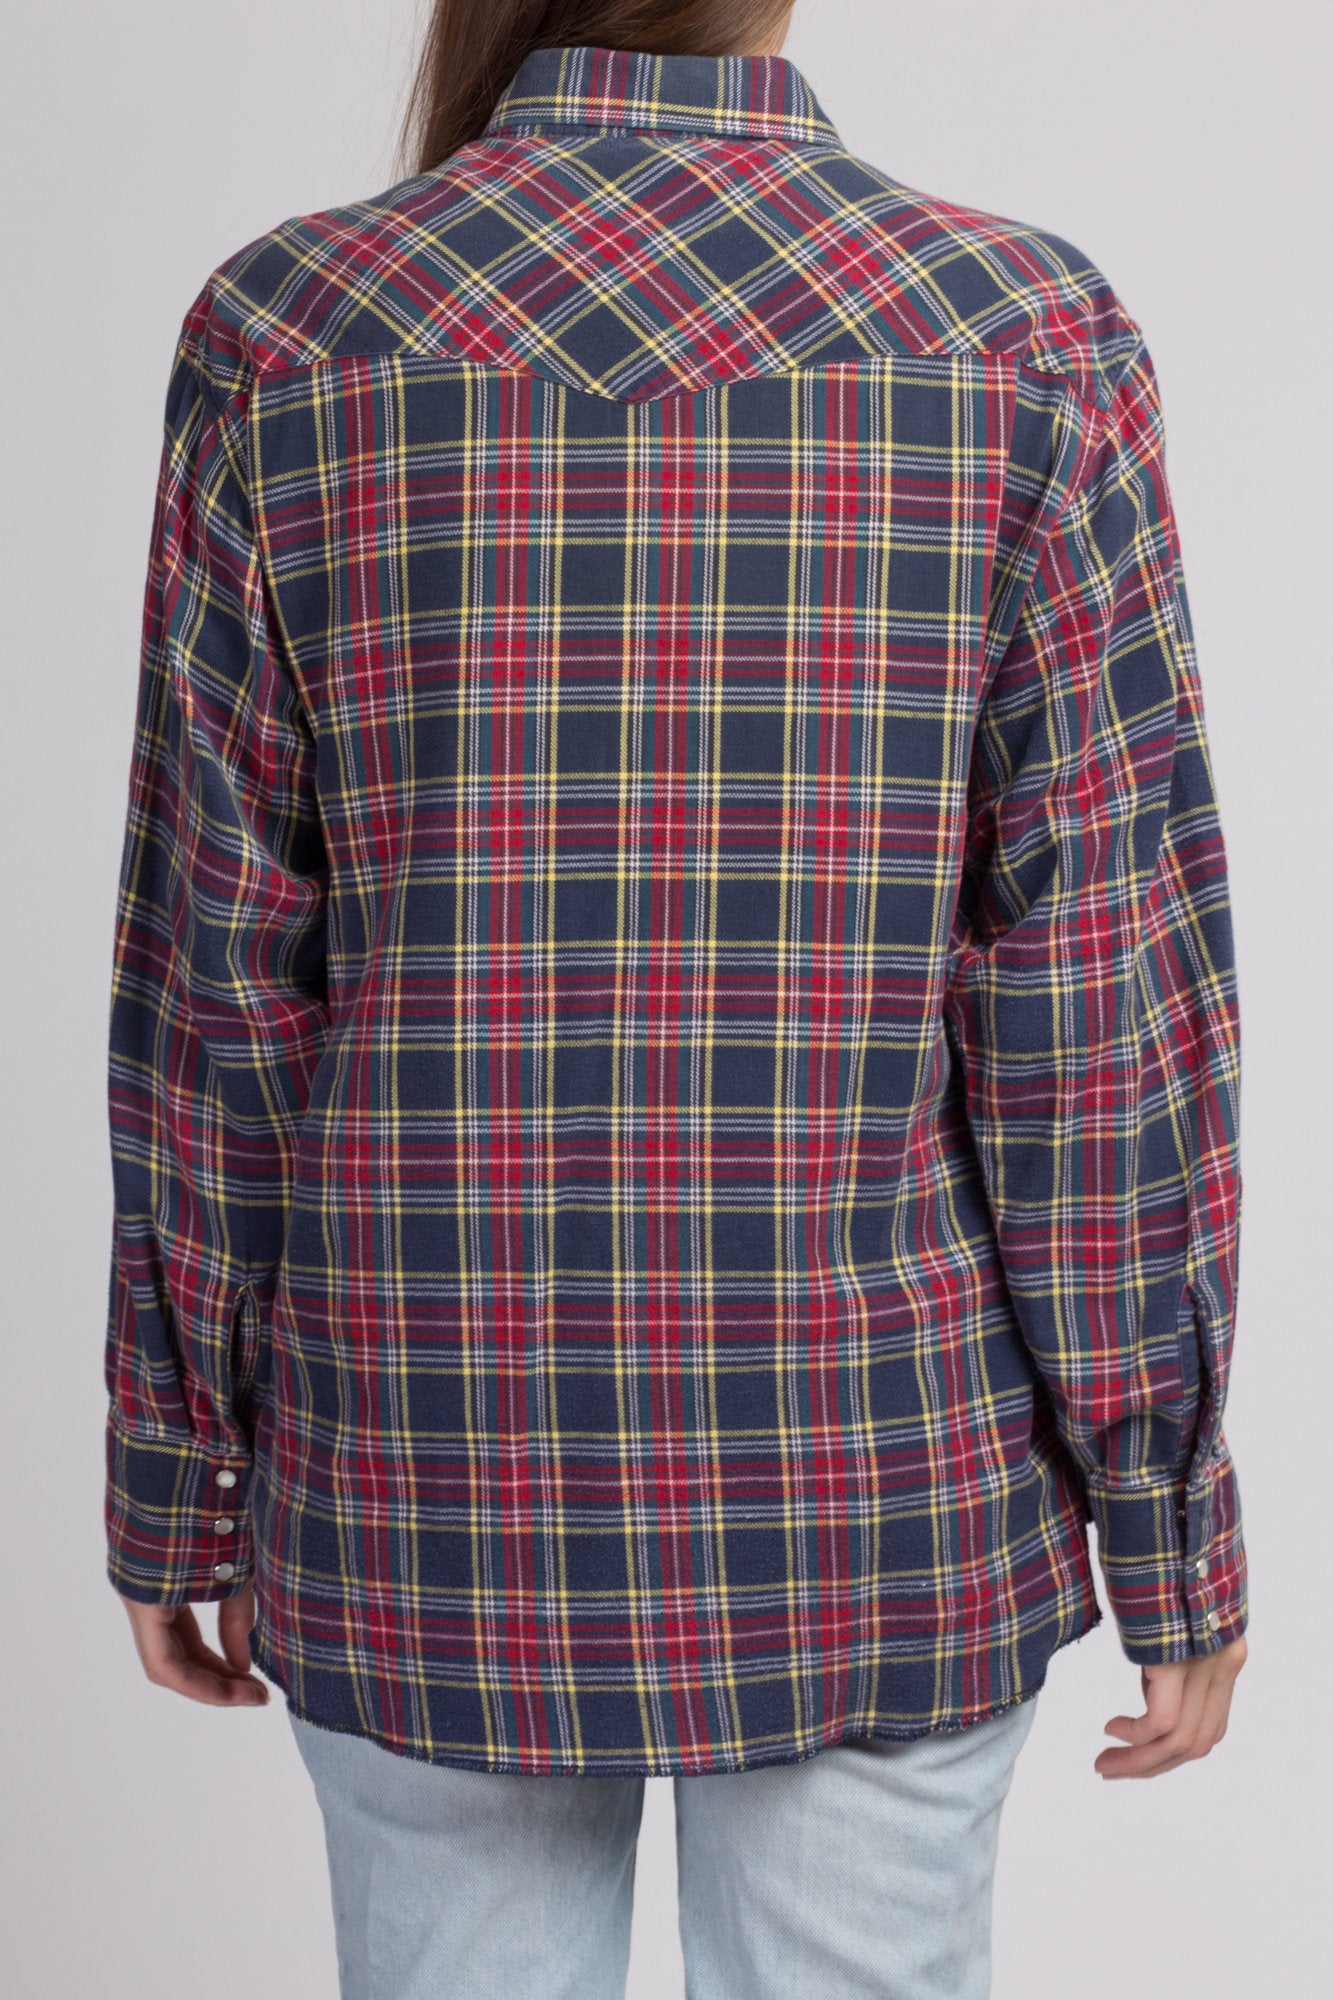 80s Plaid Cotton Flannel Shirt - Men's Large